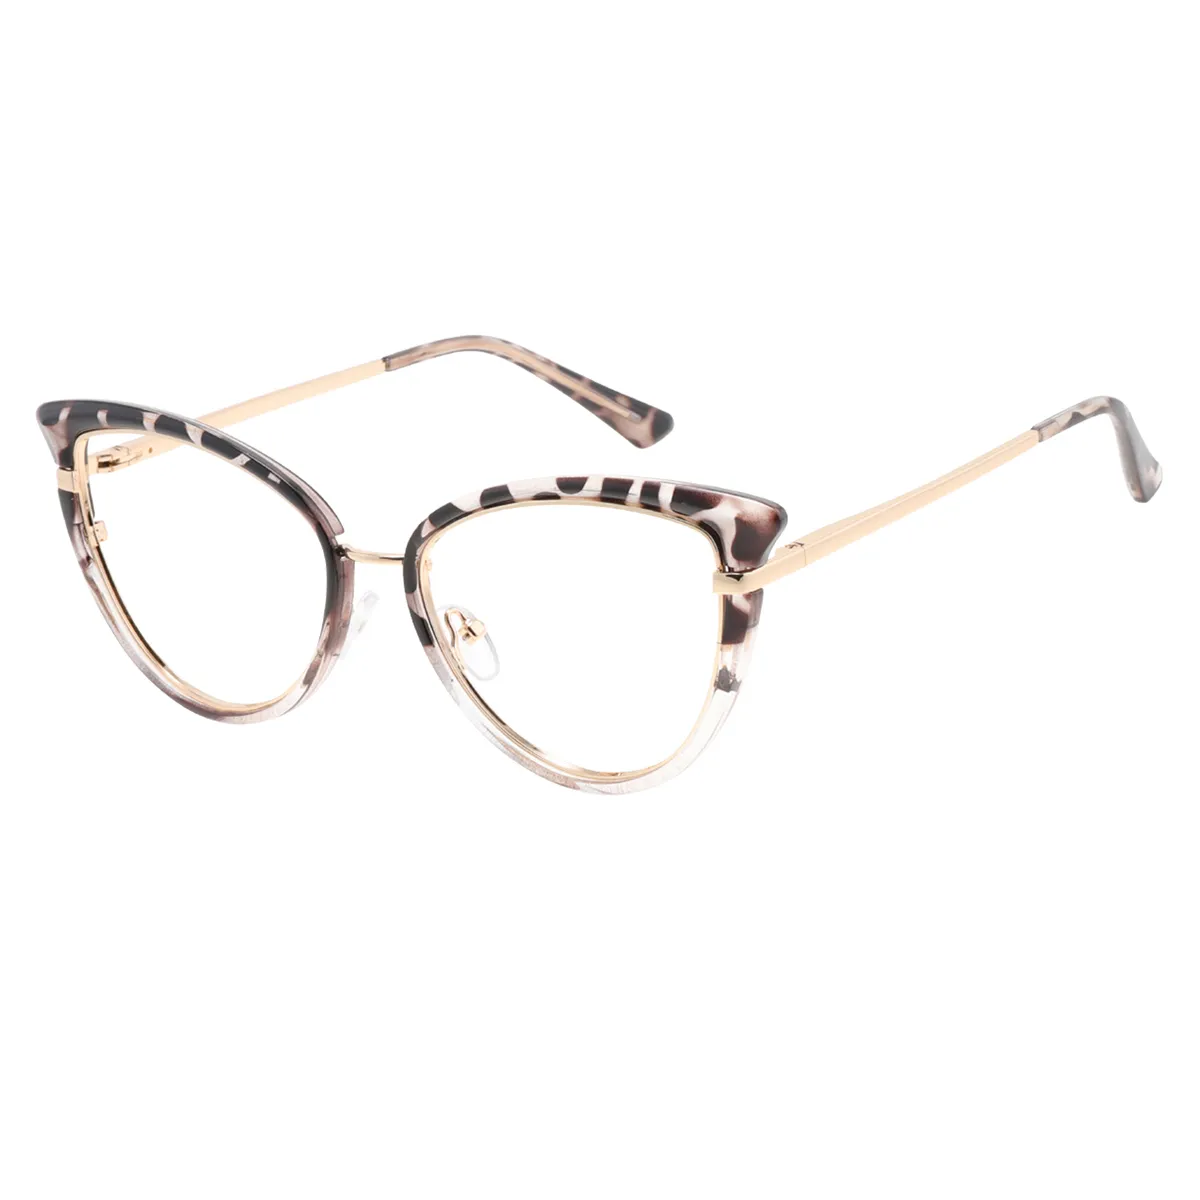 Fashion Cat-eye Tortoiseshell Glasses for Women